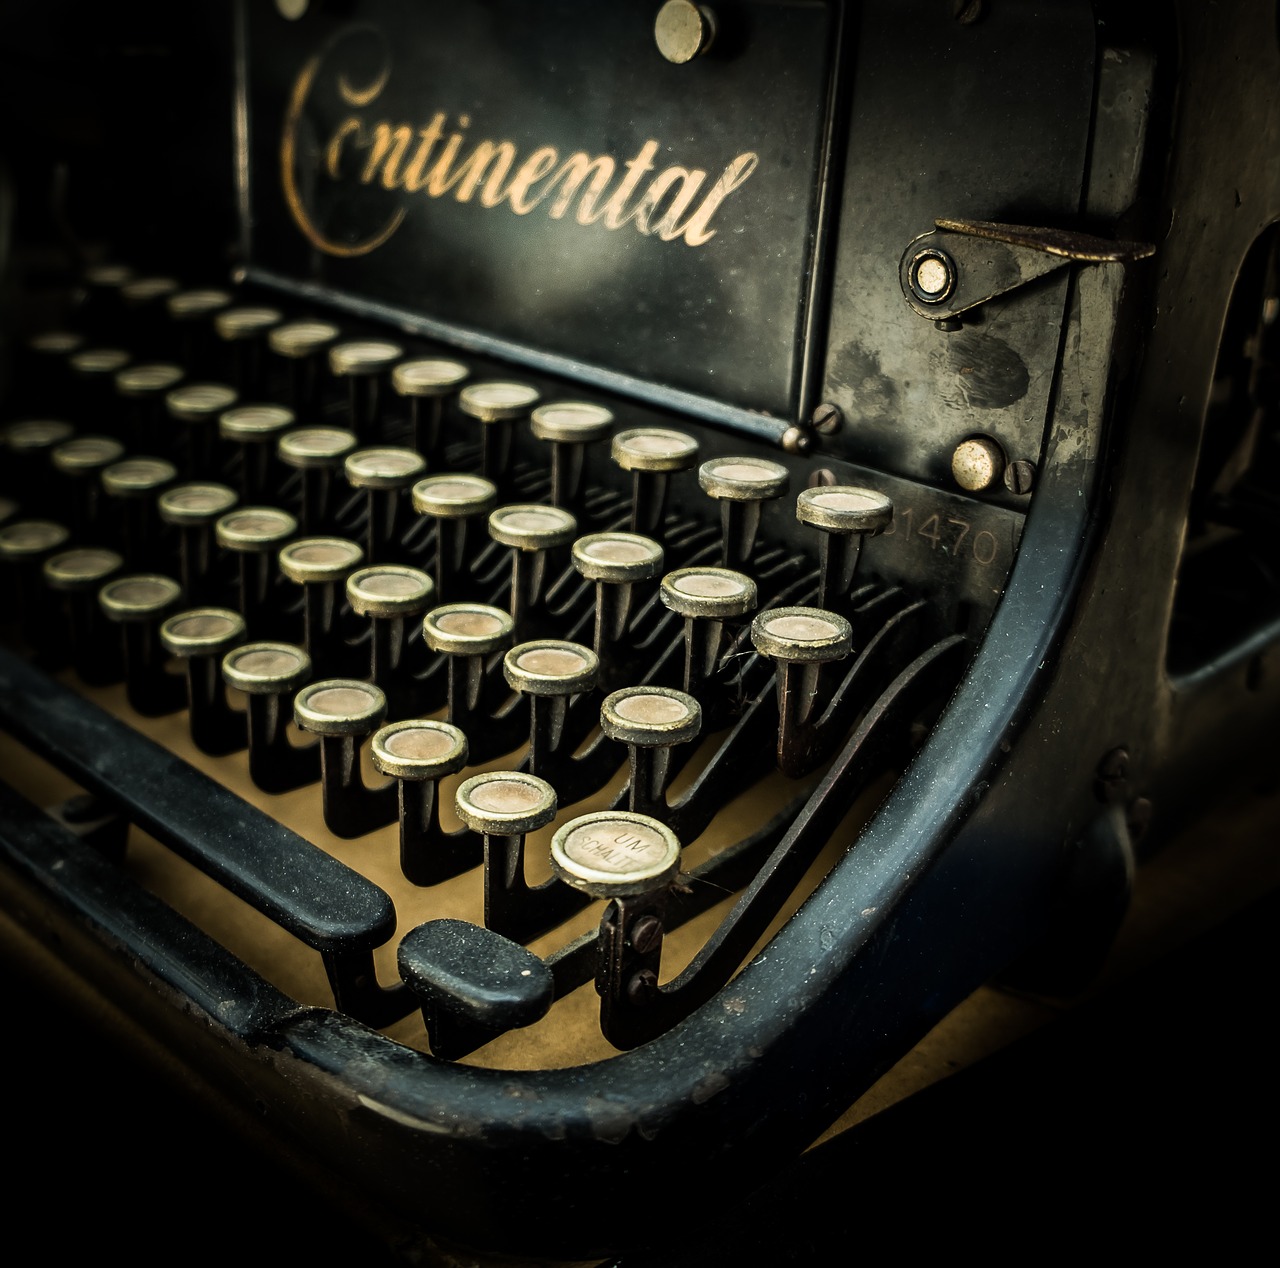 typewriter, vintage, retro-3493485.jpg